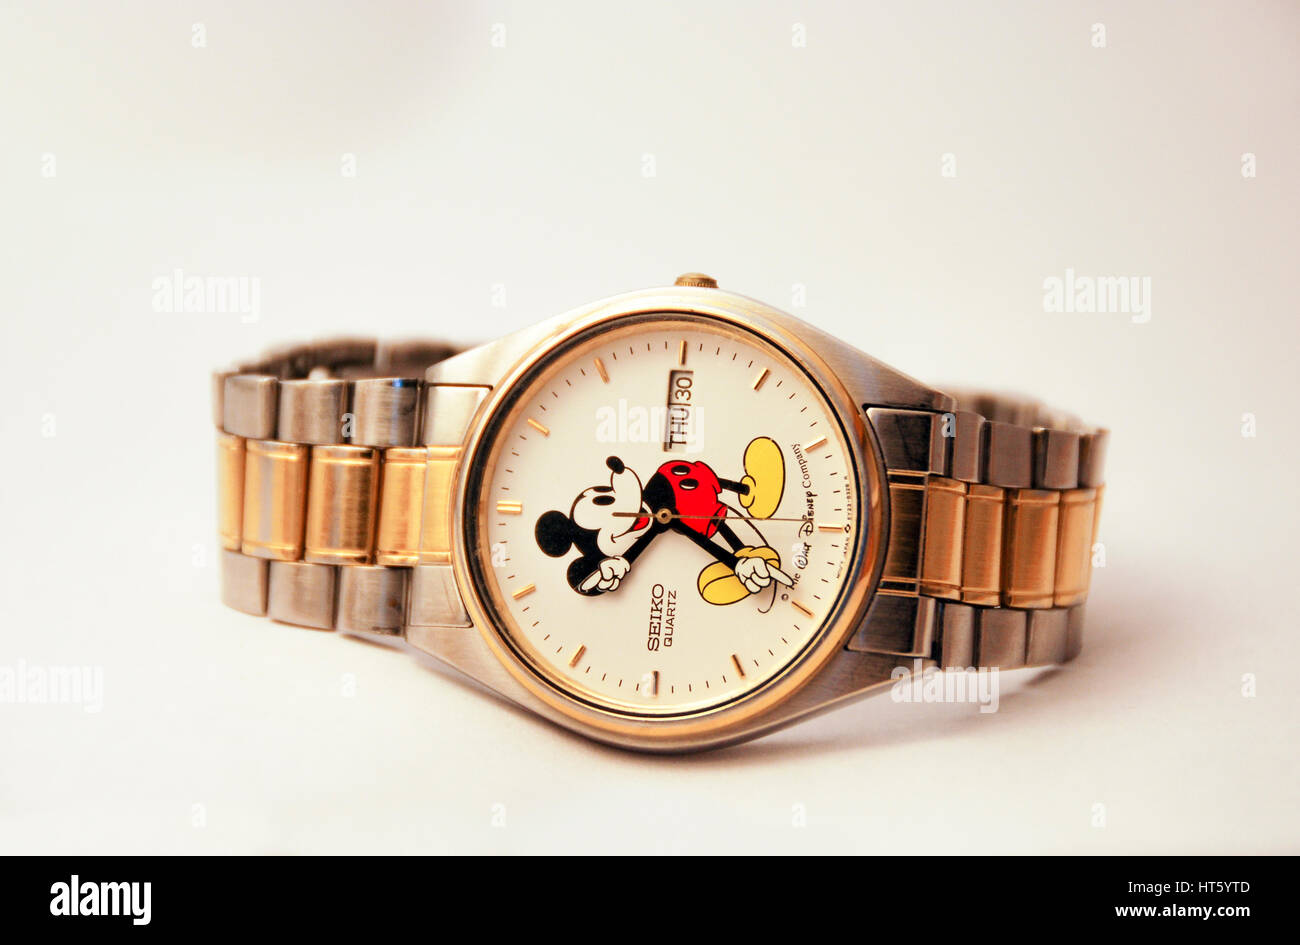 Eine Seiko Mickey-Mouse-Uhr aus den 80er Jahren Stockfotografie - Alamy